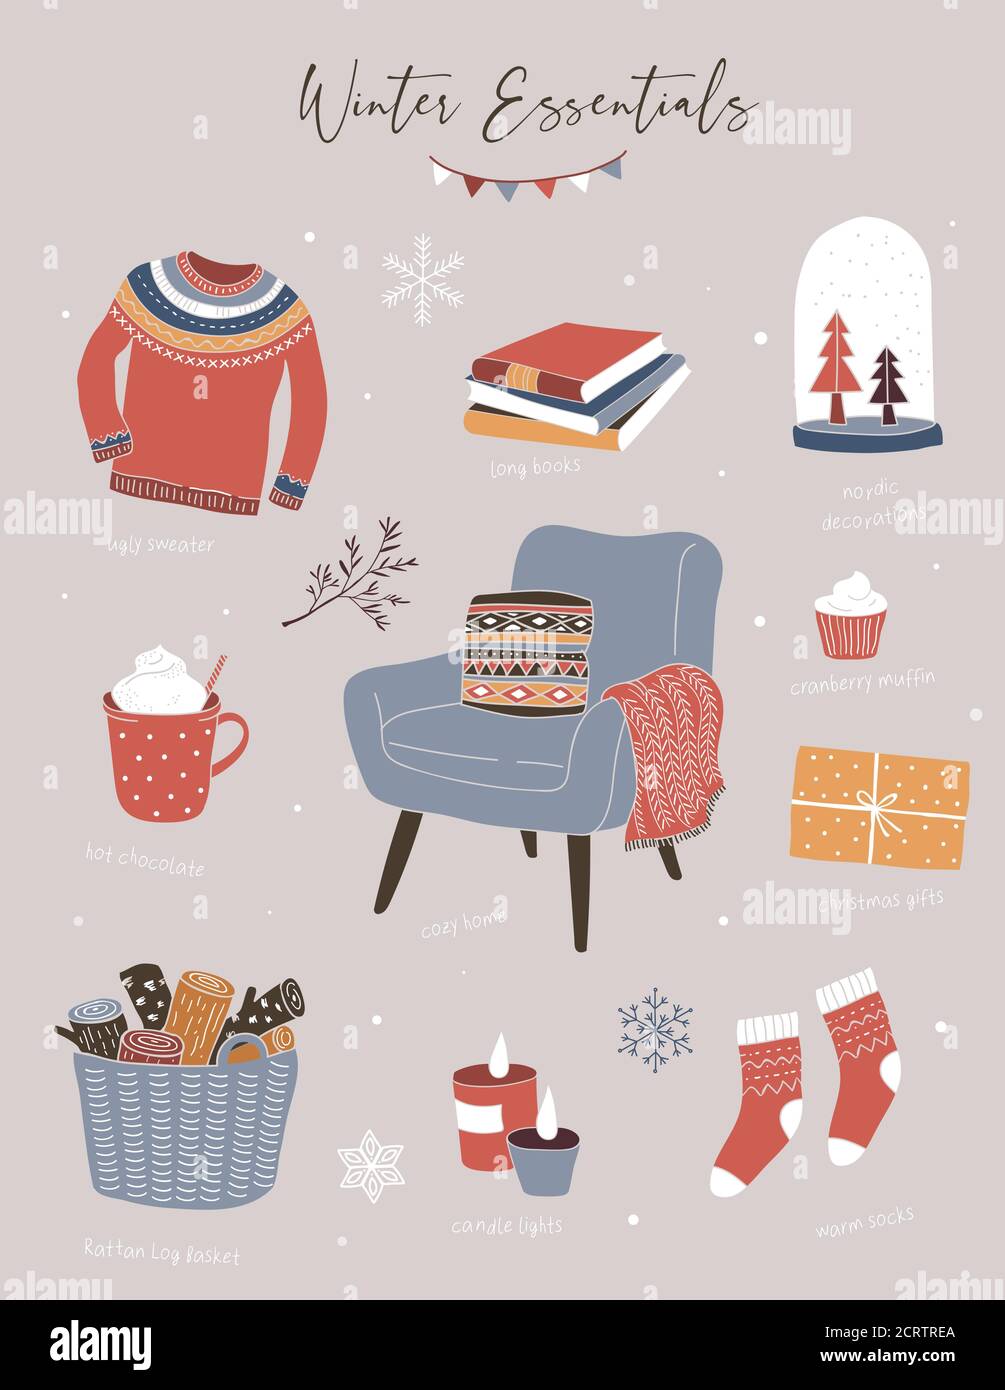 Nordic, elementi invernali scandinavi e Hygge Concept design, Merry Christmas card, banner, sfondo, illustrazioni vettoriali disegnate a mano Illustrazione Vettoriale